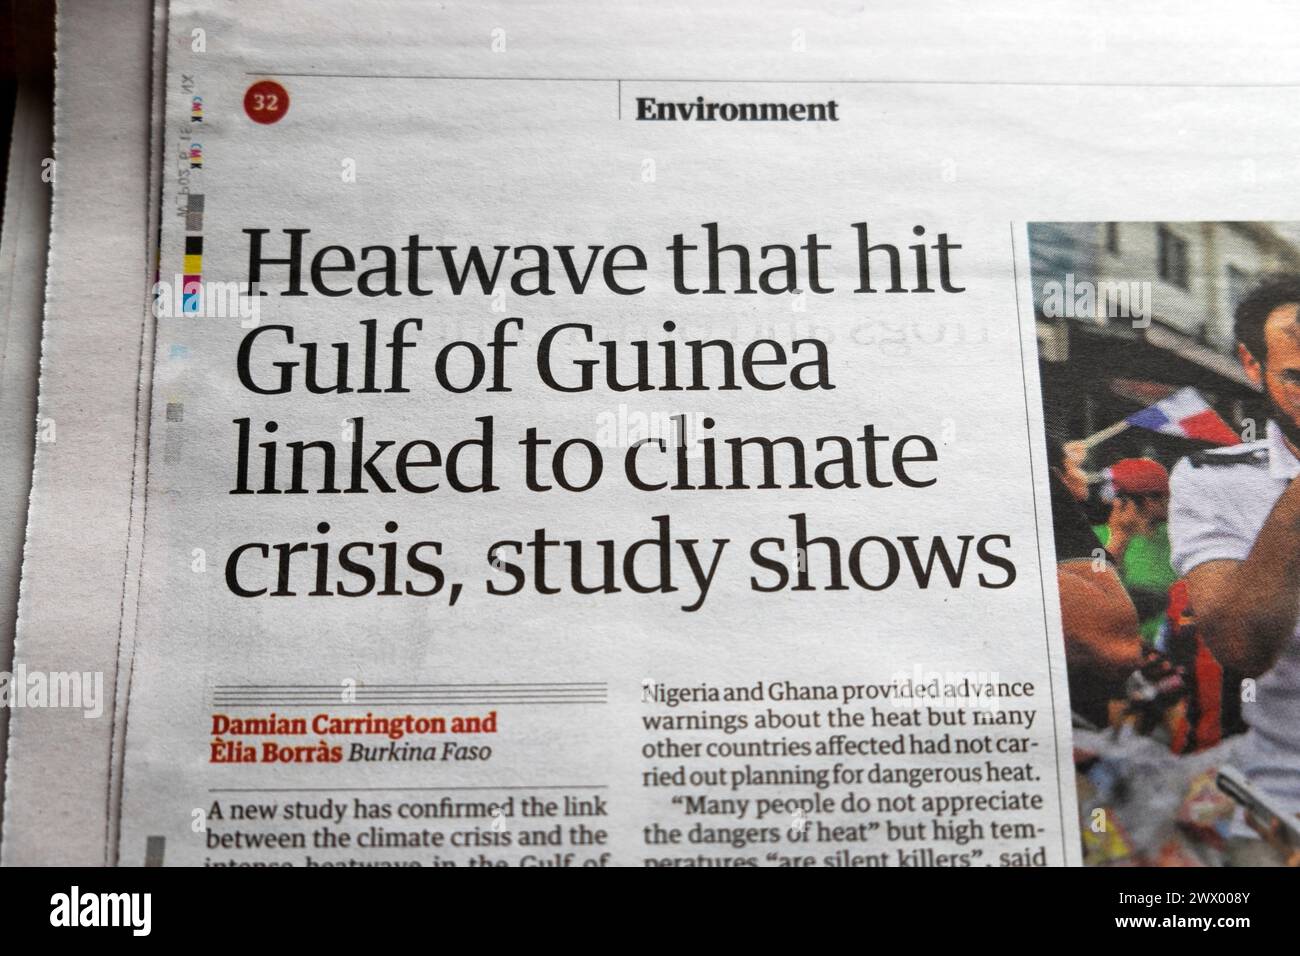 "La ola de calor que azotó el Golfo de Guinea vinculada a la crisis climática", según muestra un estudio, el periódico Guardian titula el artículo sobre medio ambiente 23 de marzo de 2024 Londres Reino Unido Foto de stock